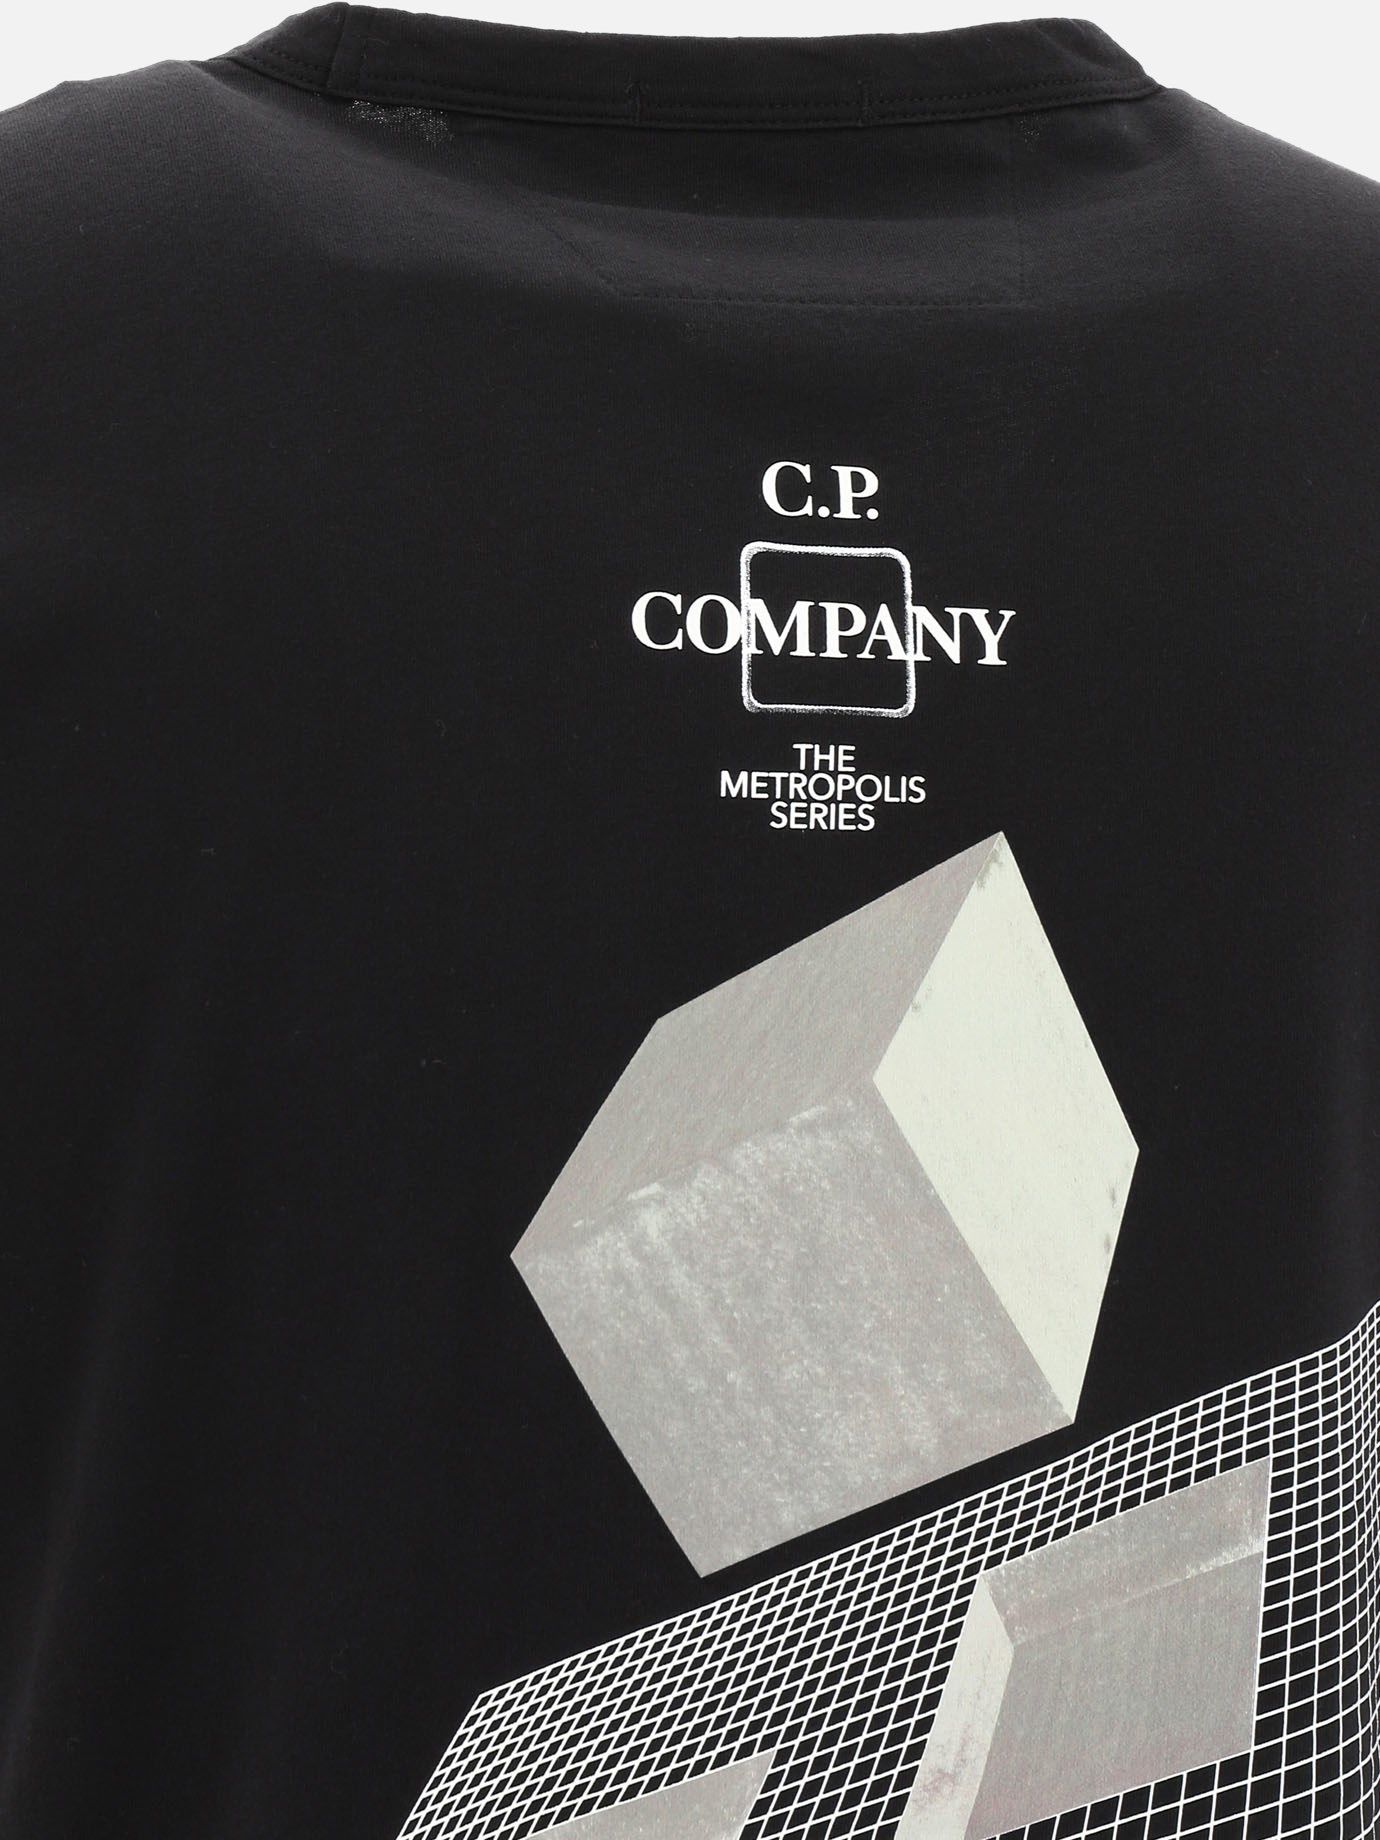  Maetropolis Series  t-shirt by C.P. Company